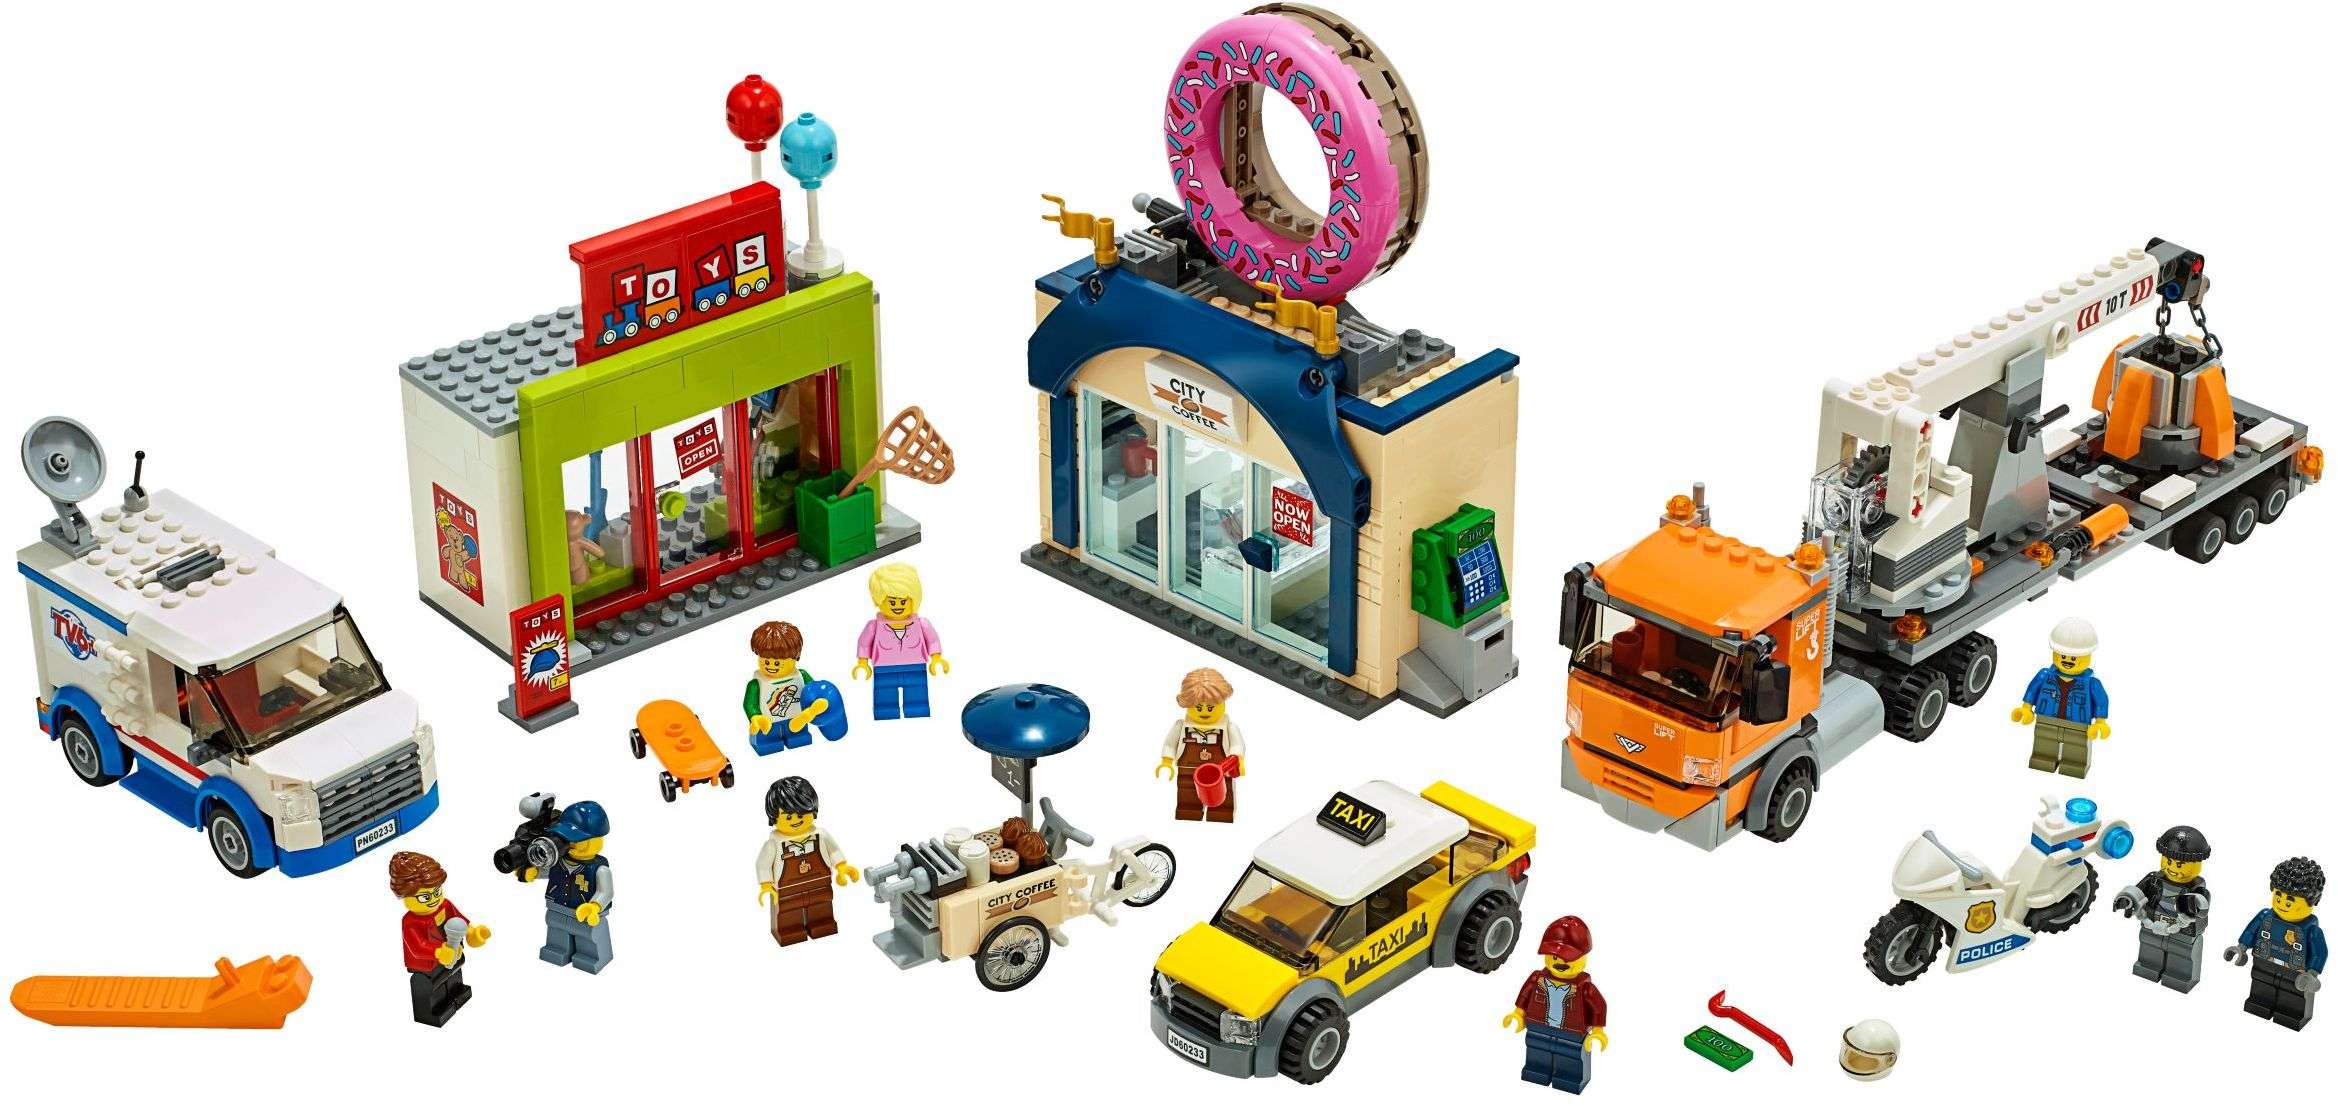 LEGO City - Donut shop opening (60233)